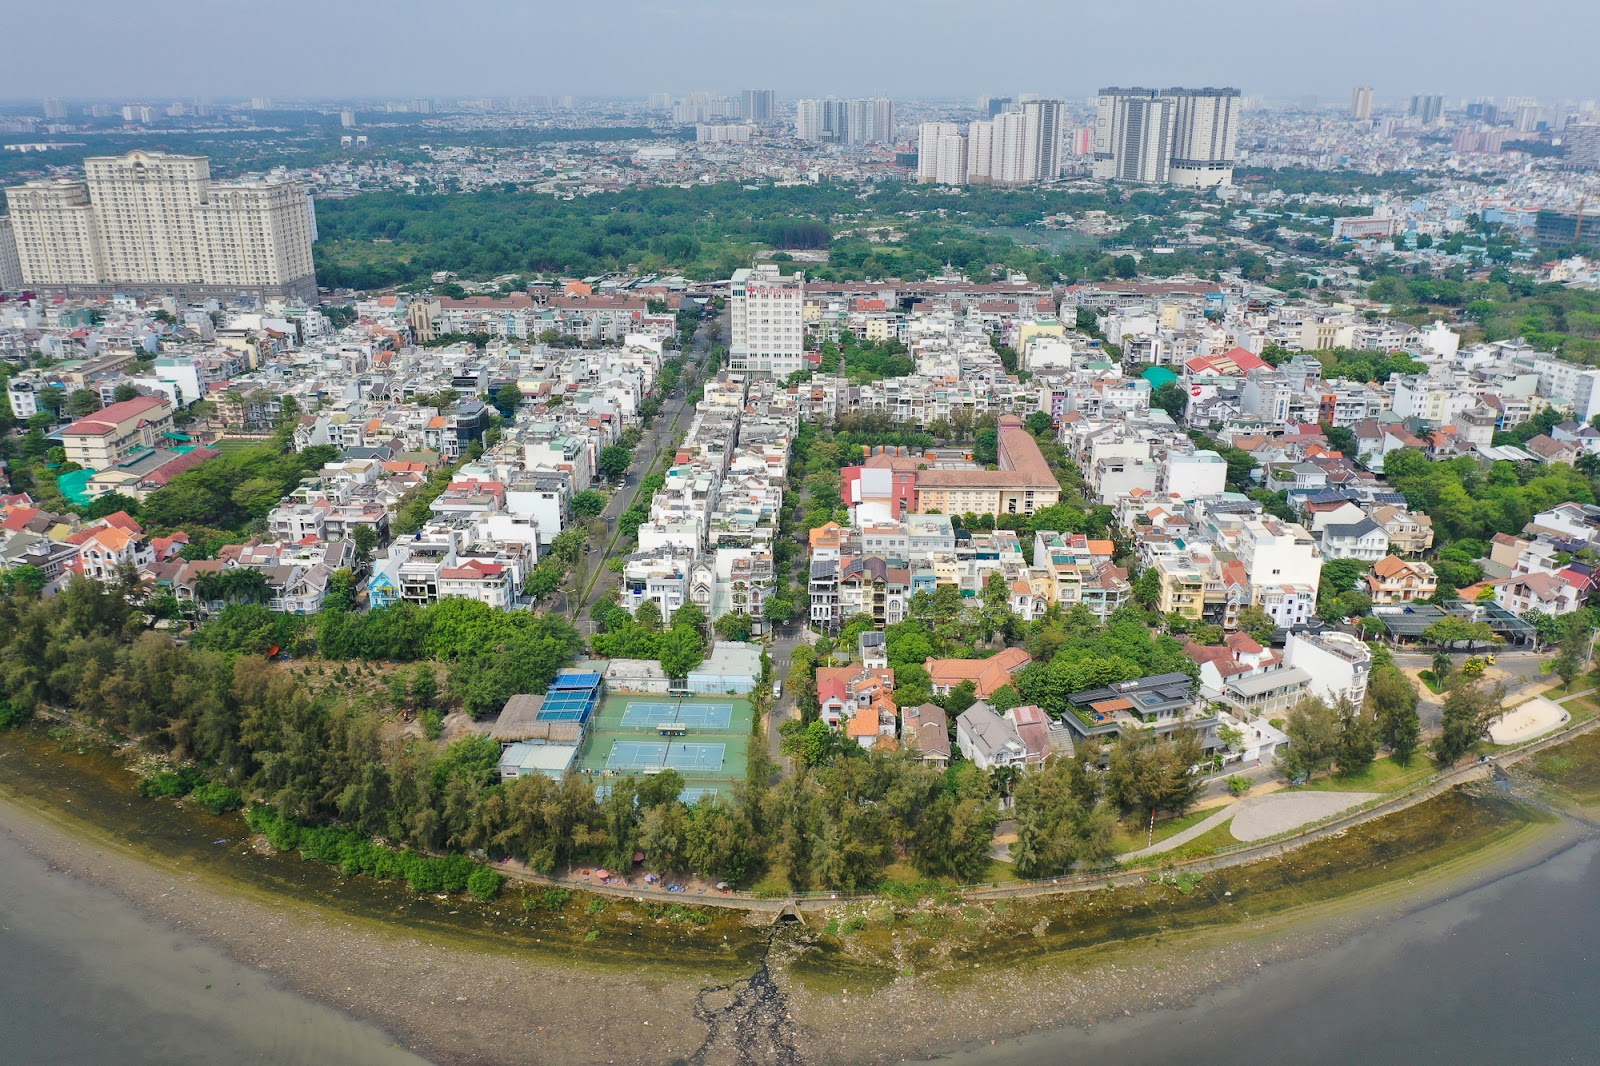 Diện mạo huyện đông dân nhất Việt Nam muốn trở thành thành phố - Ảnh 3.